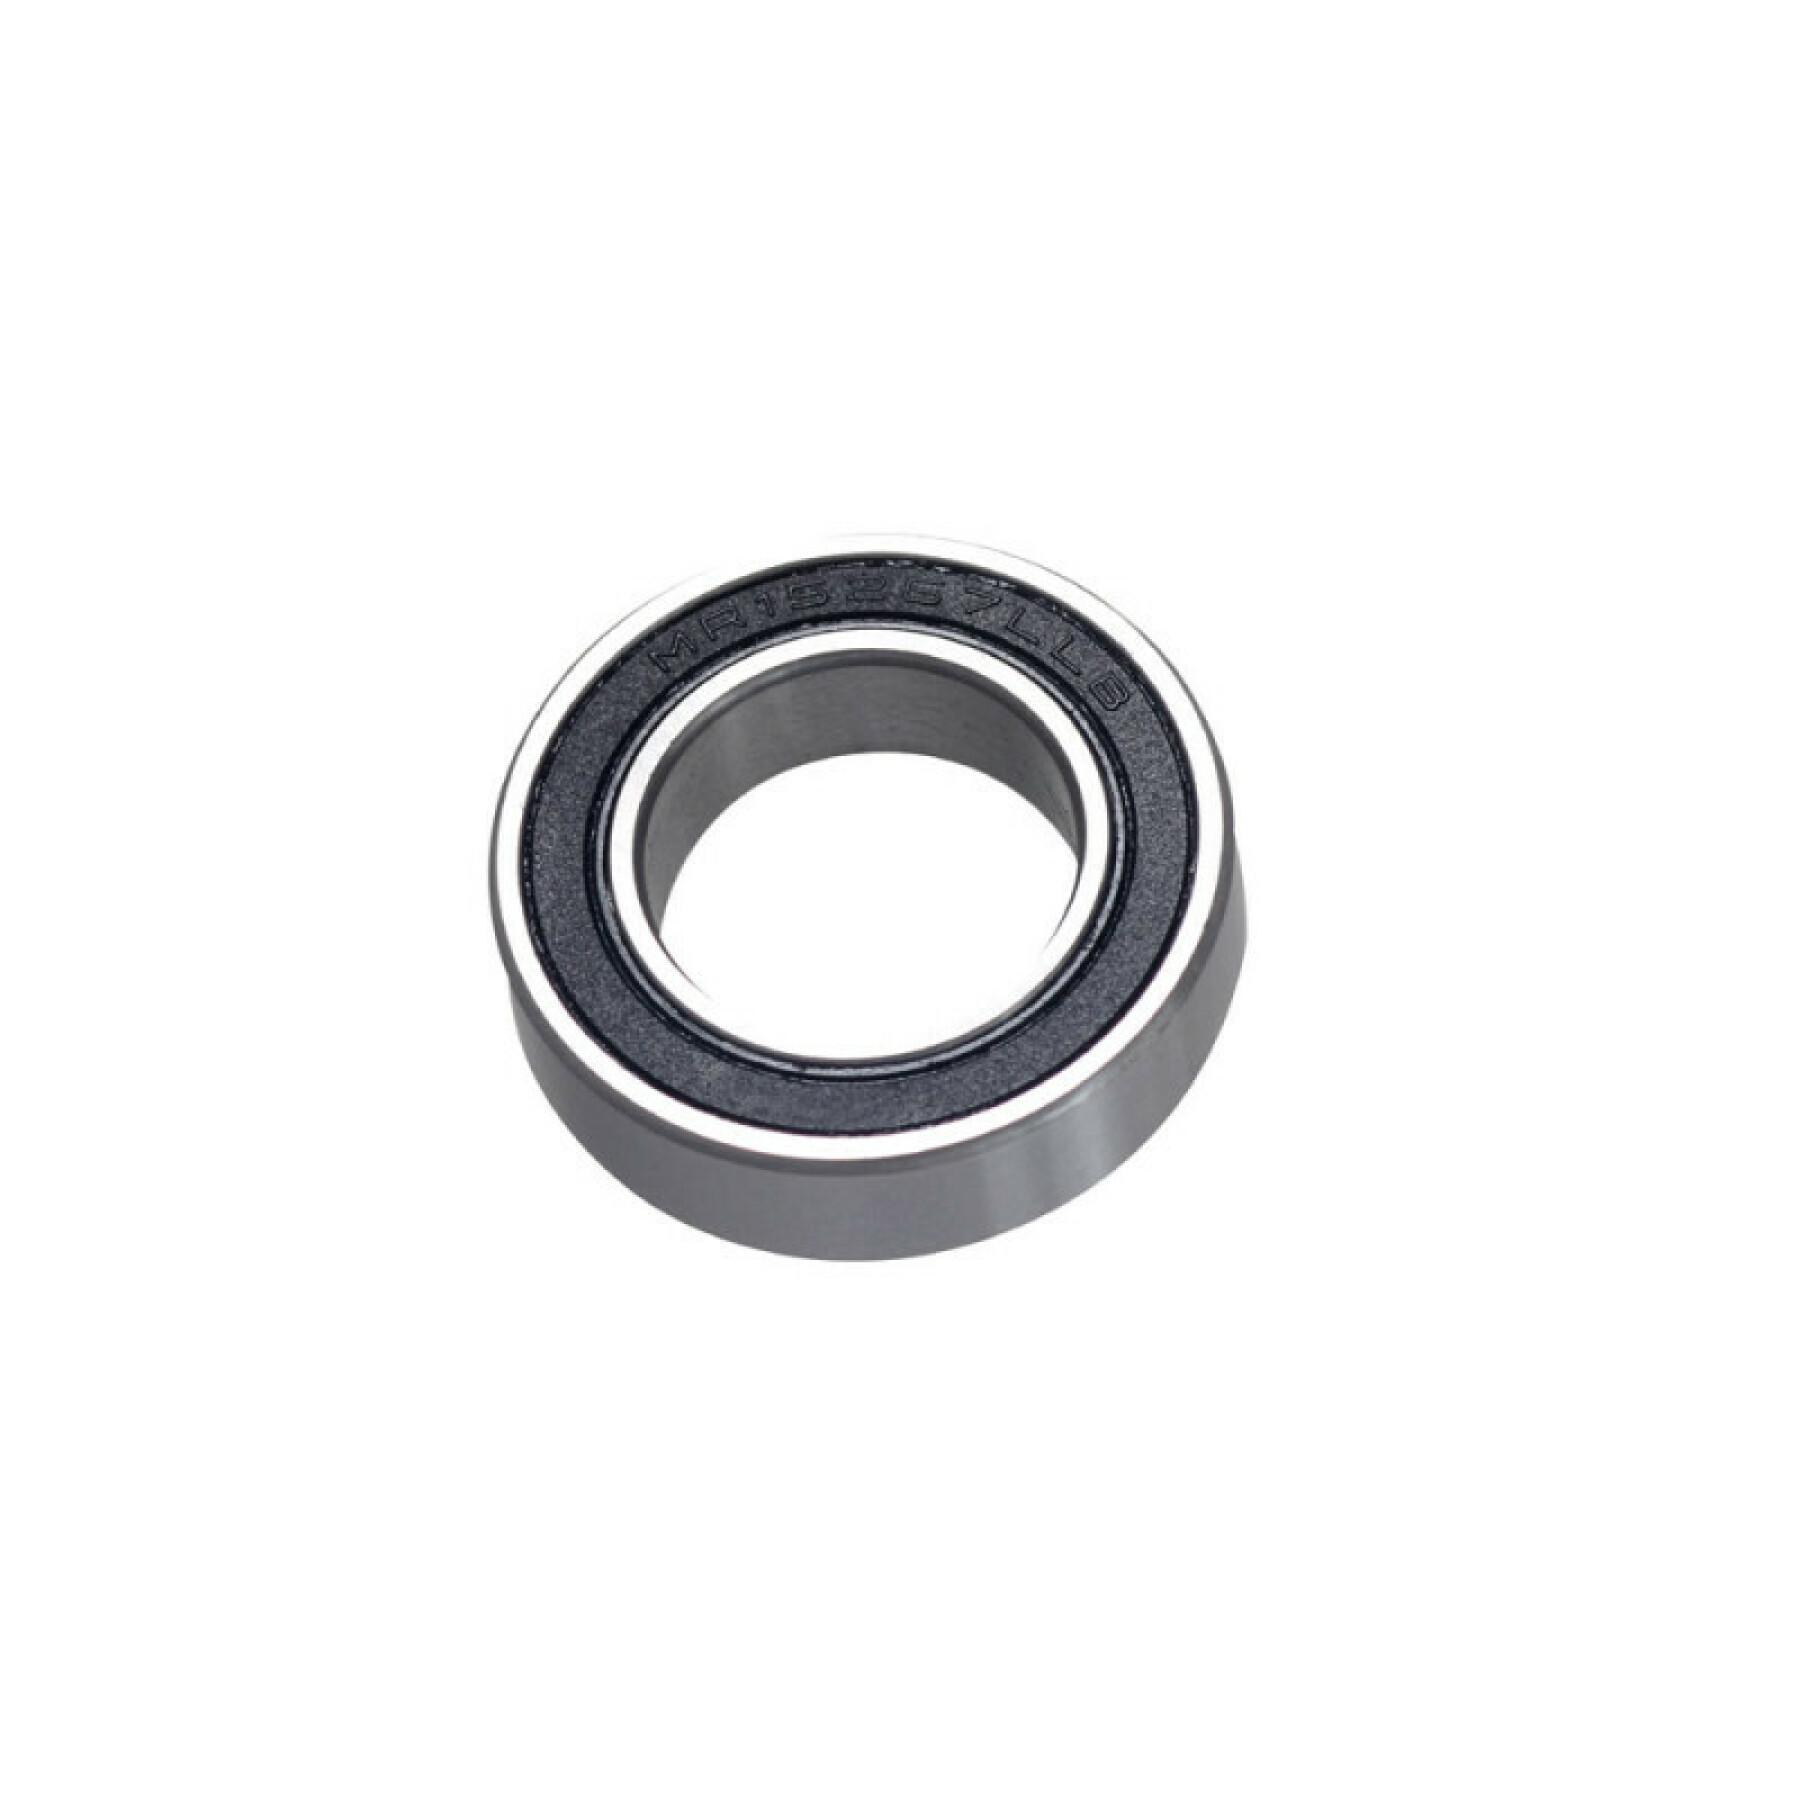 Cartridge bearing Marwi CB-083 MR15267 2RS